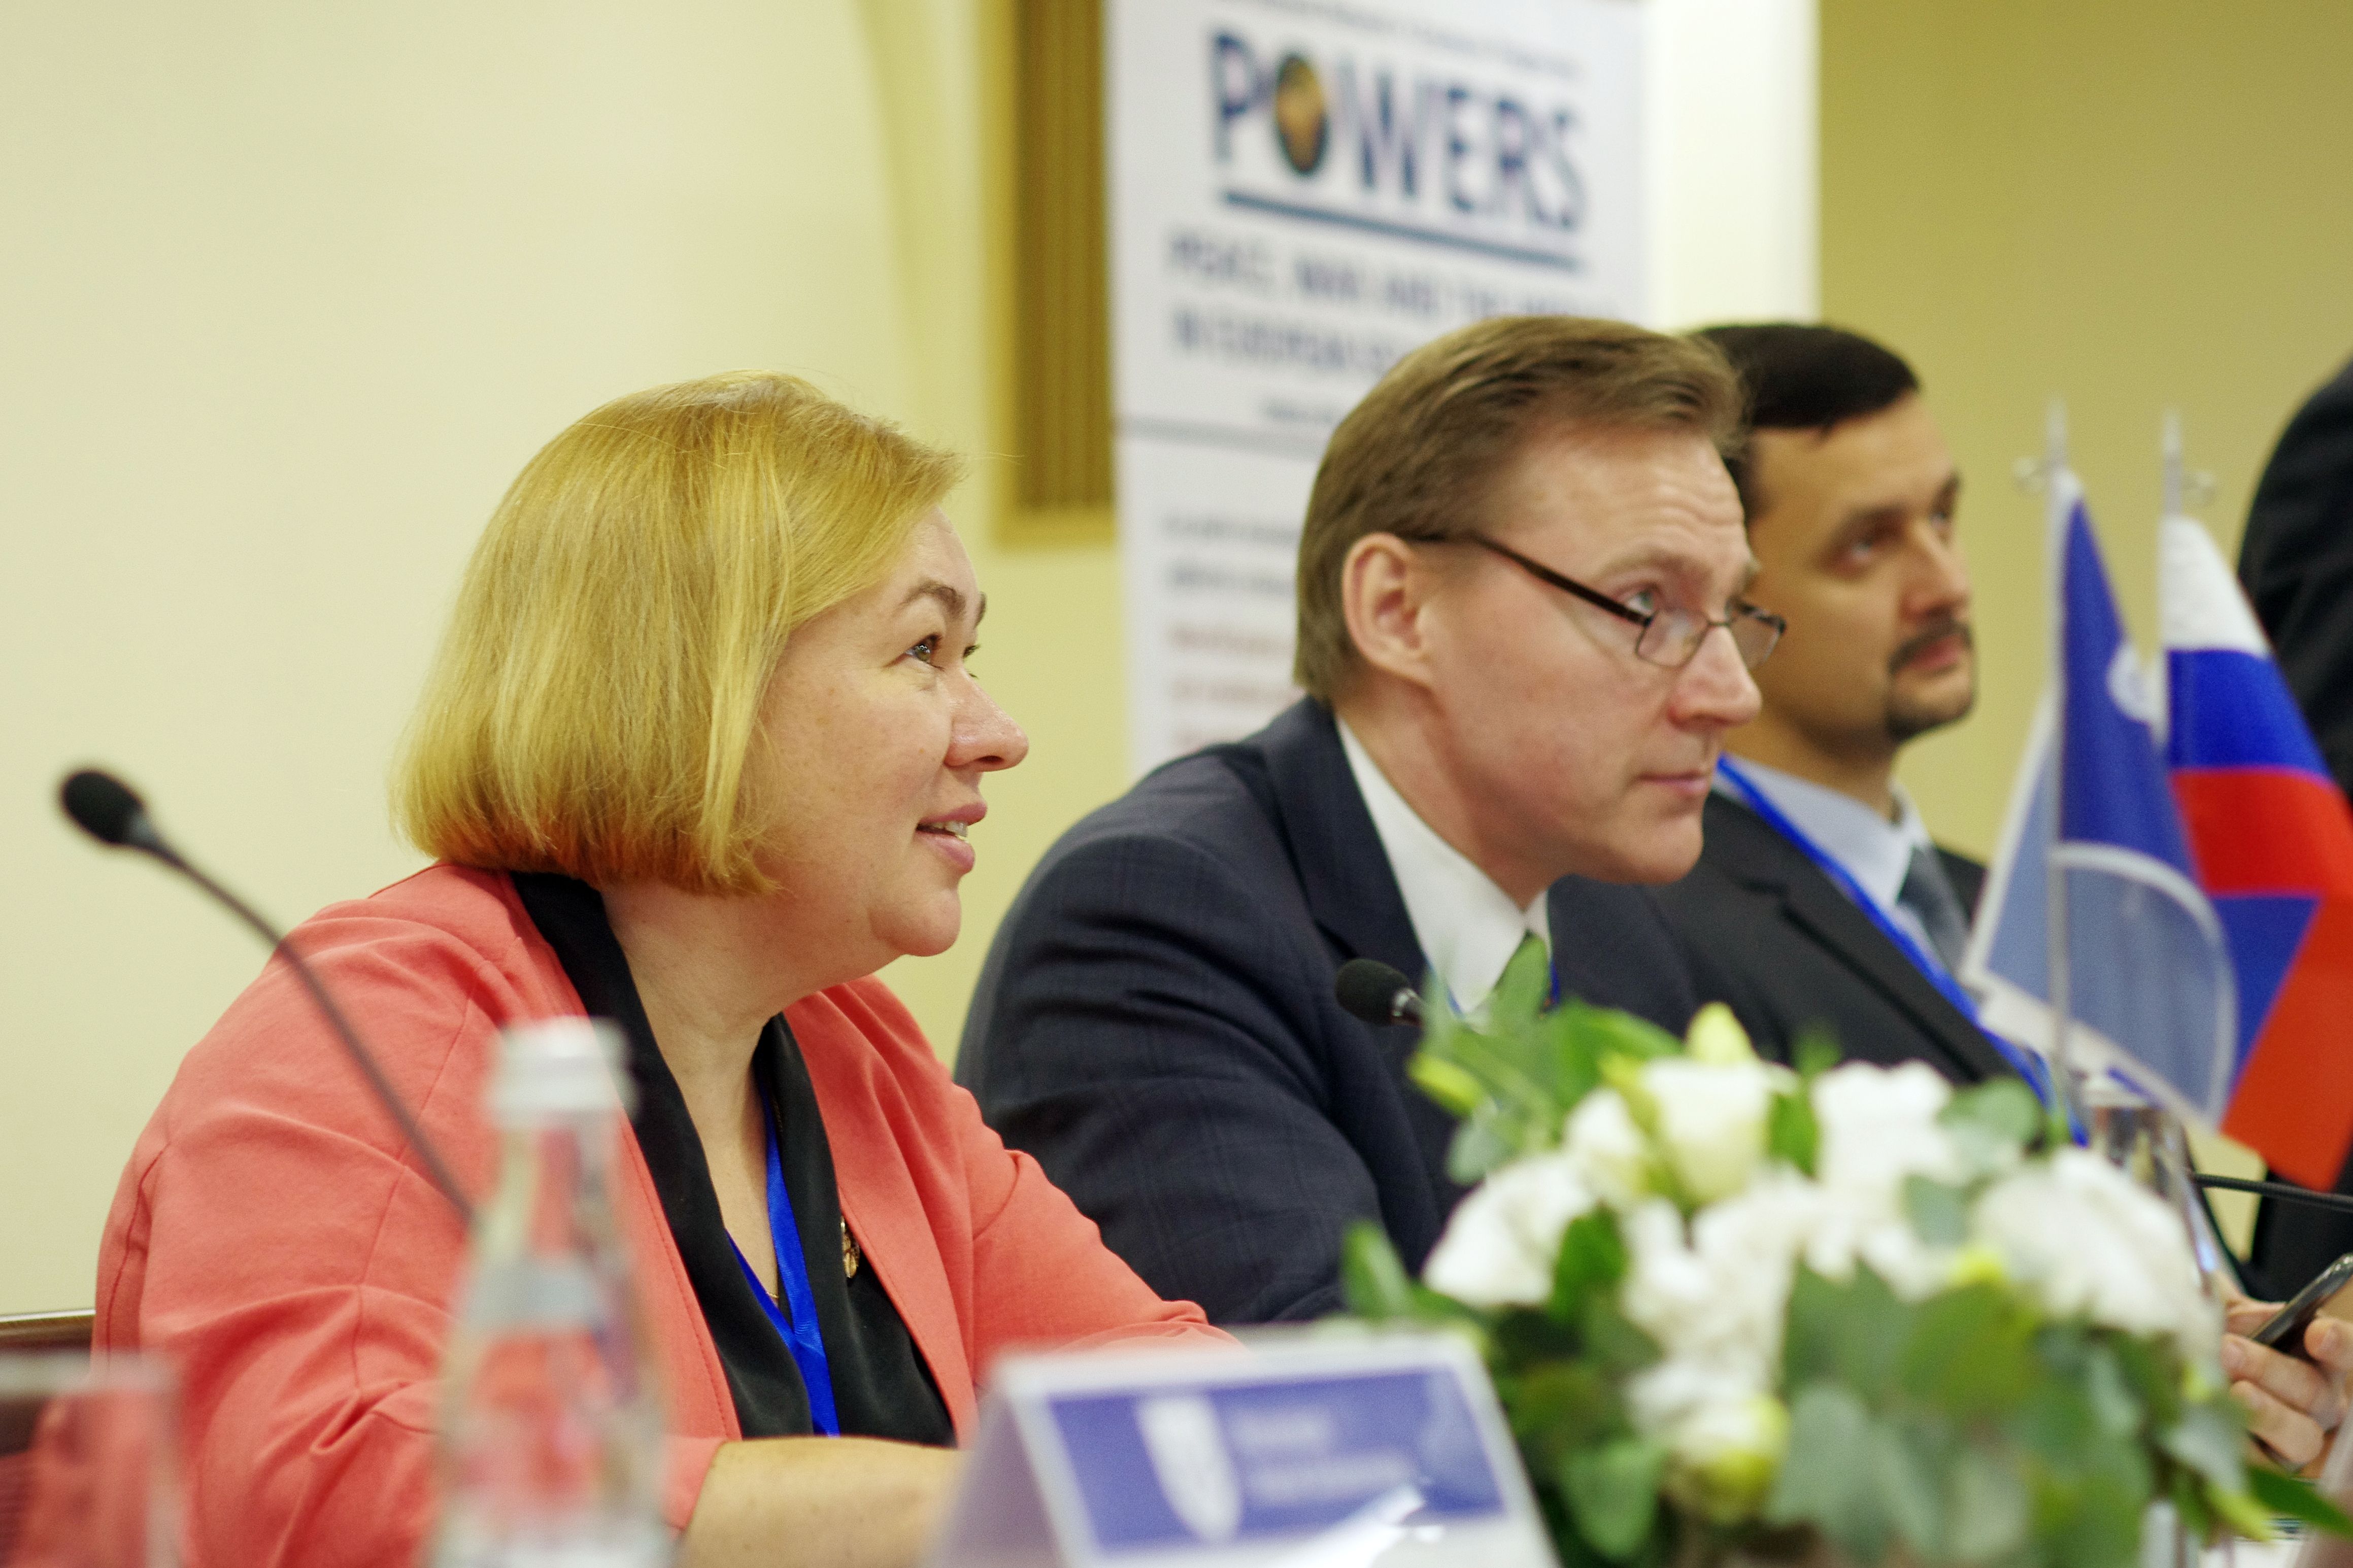 Руководители АЕВИС и представители региональных отделений приняли участие в организации и проведении Международной научной конференции в Воронеже.